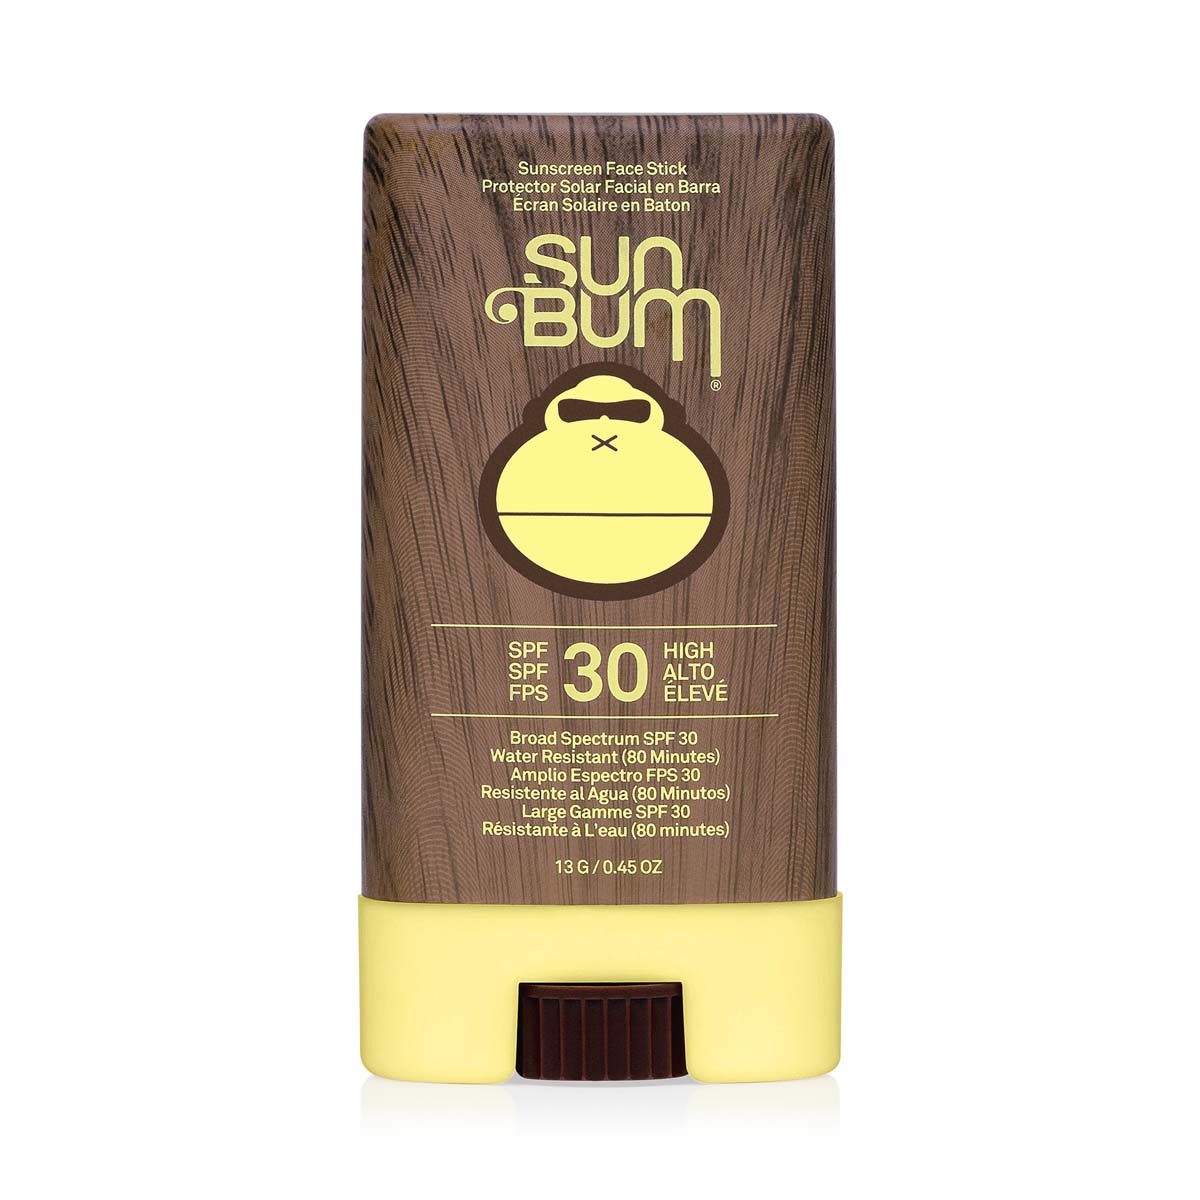 Sun Bum Original Spf30 Sunscreen Face Stick 13G